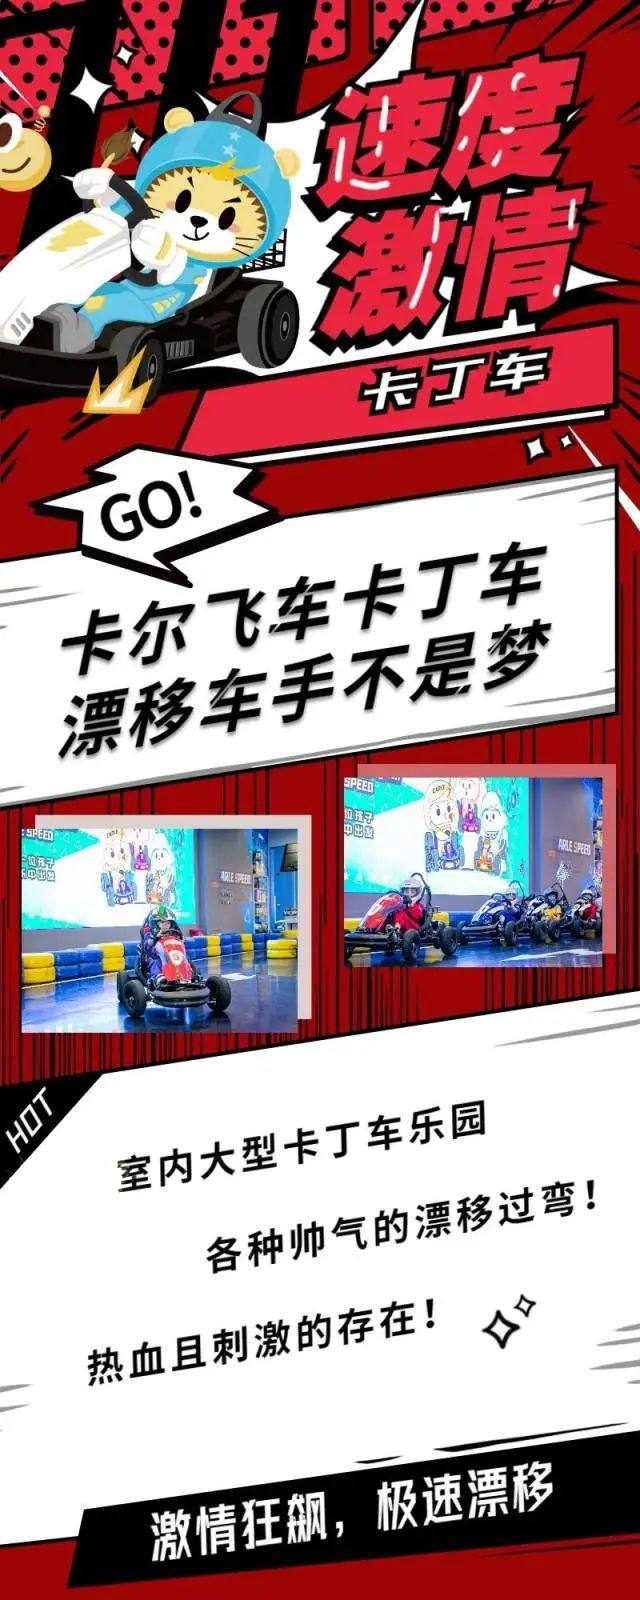 【广州新塘亲子卡丁车】，49.9元秒杀单人卡尔卡丁车（周六日通用），更新鲜、刺激的溜娃方式！